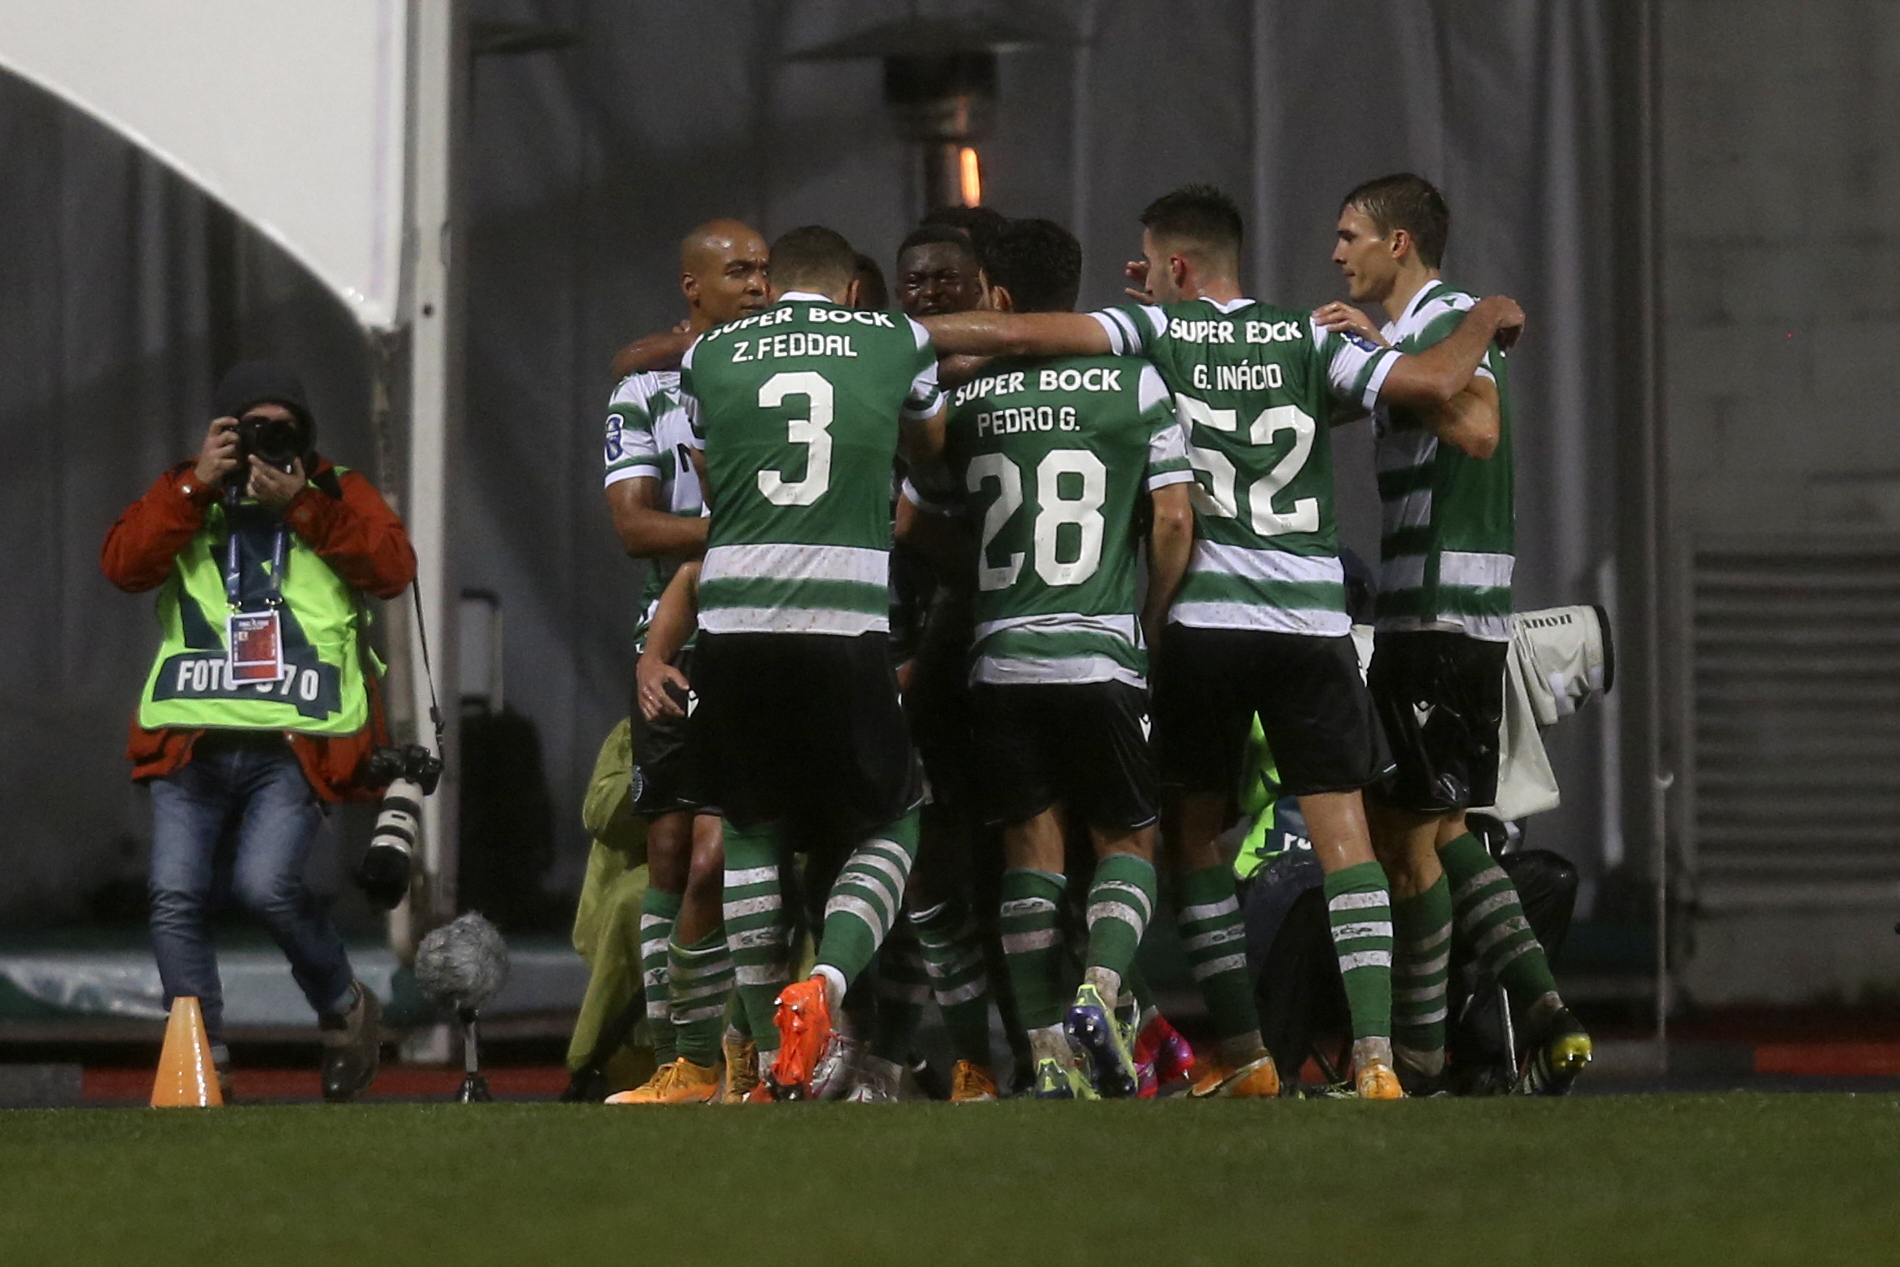 DESPORTO (Futebol) - Termina em Braga e deu empate (1-1) entre SC Braga e  Sporting CP - O Amarense